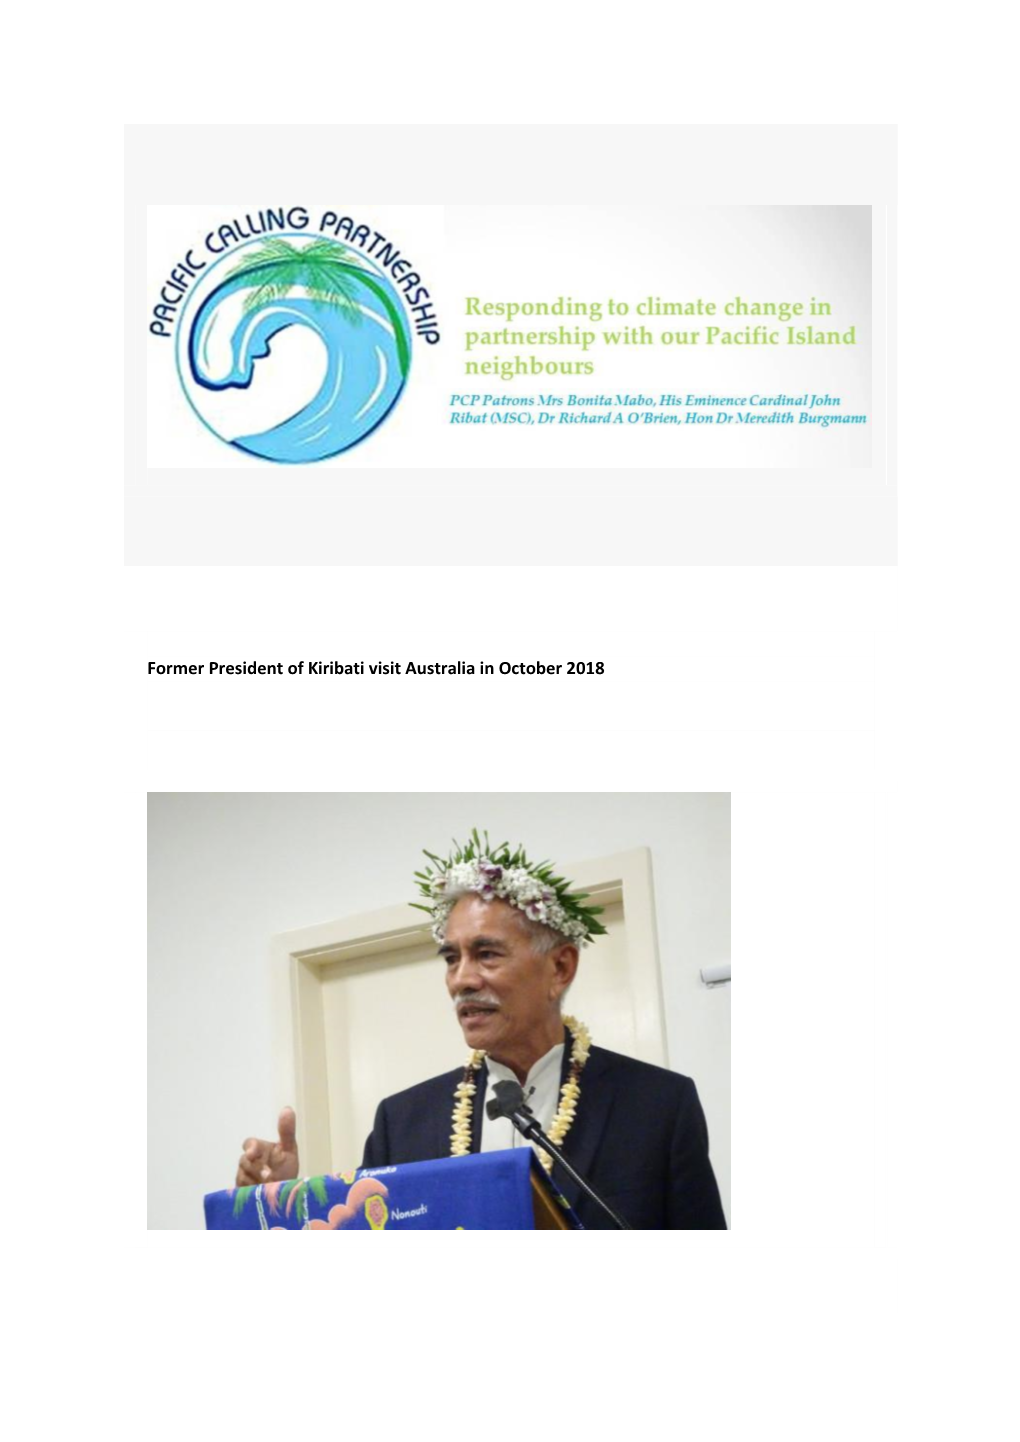 Former President of Kiribati Visit Australia in October 2018